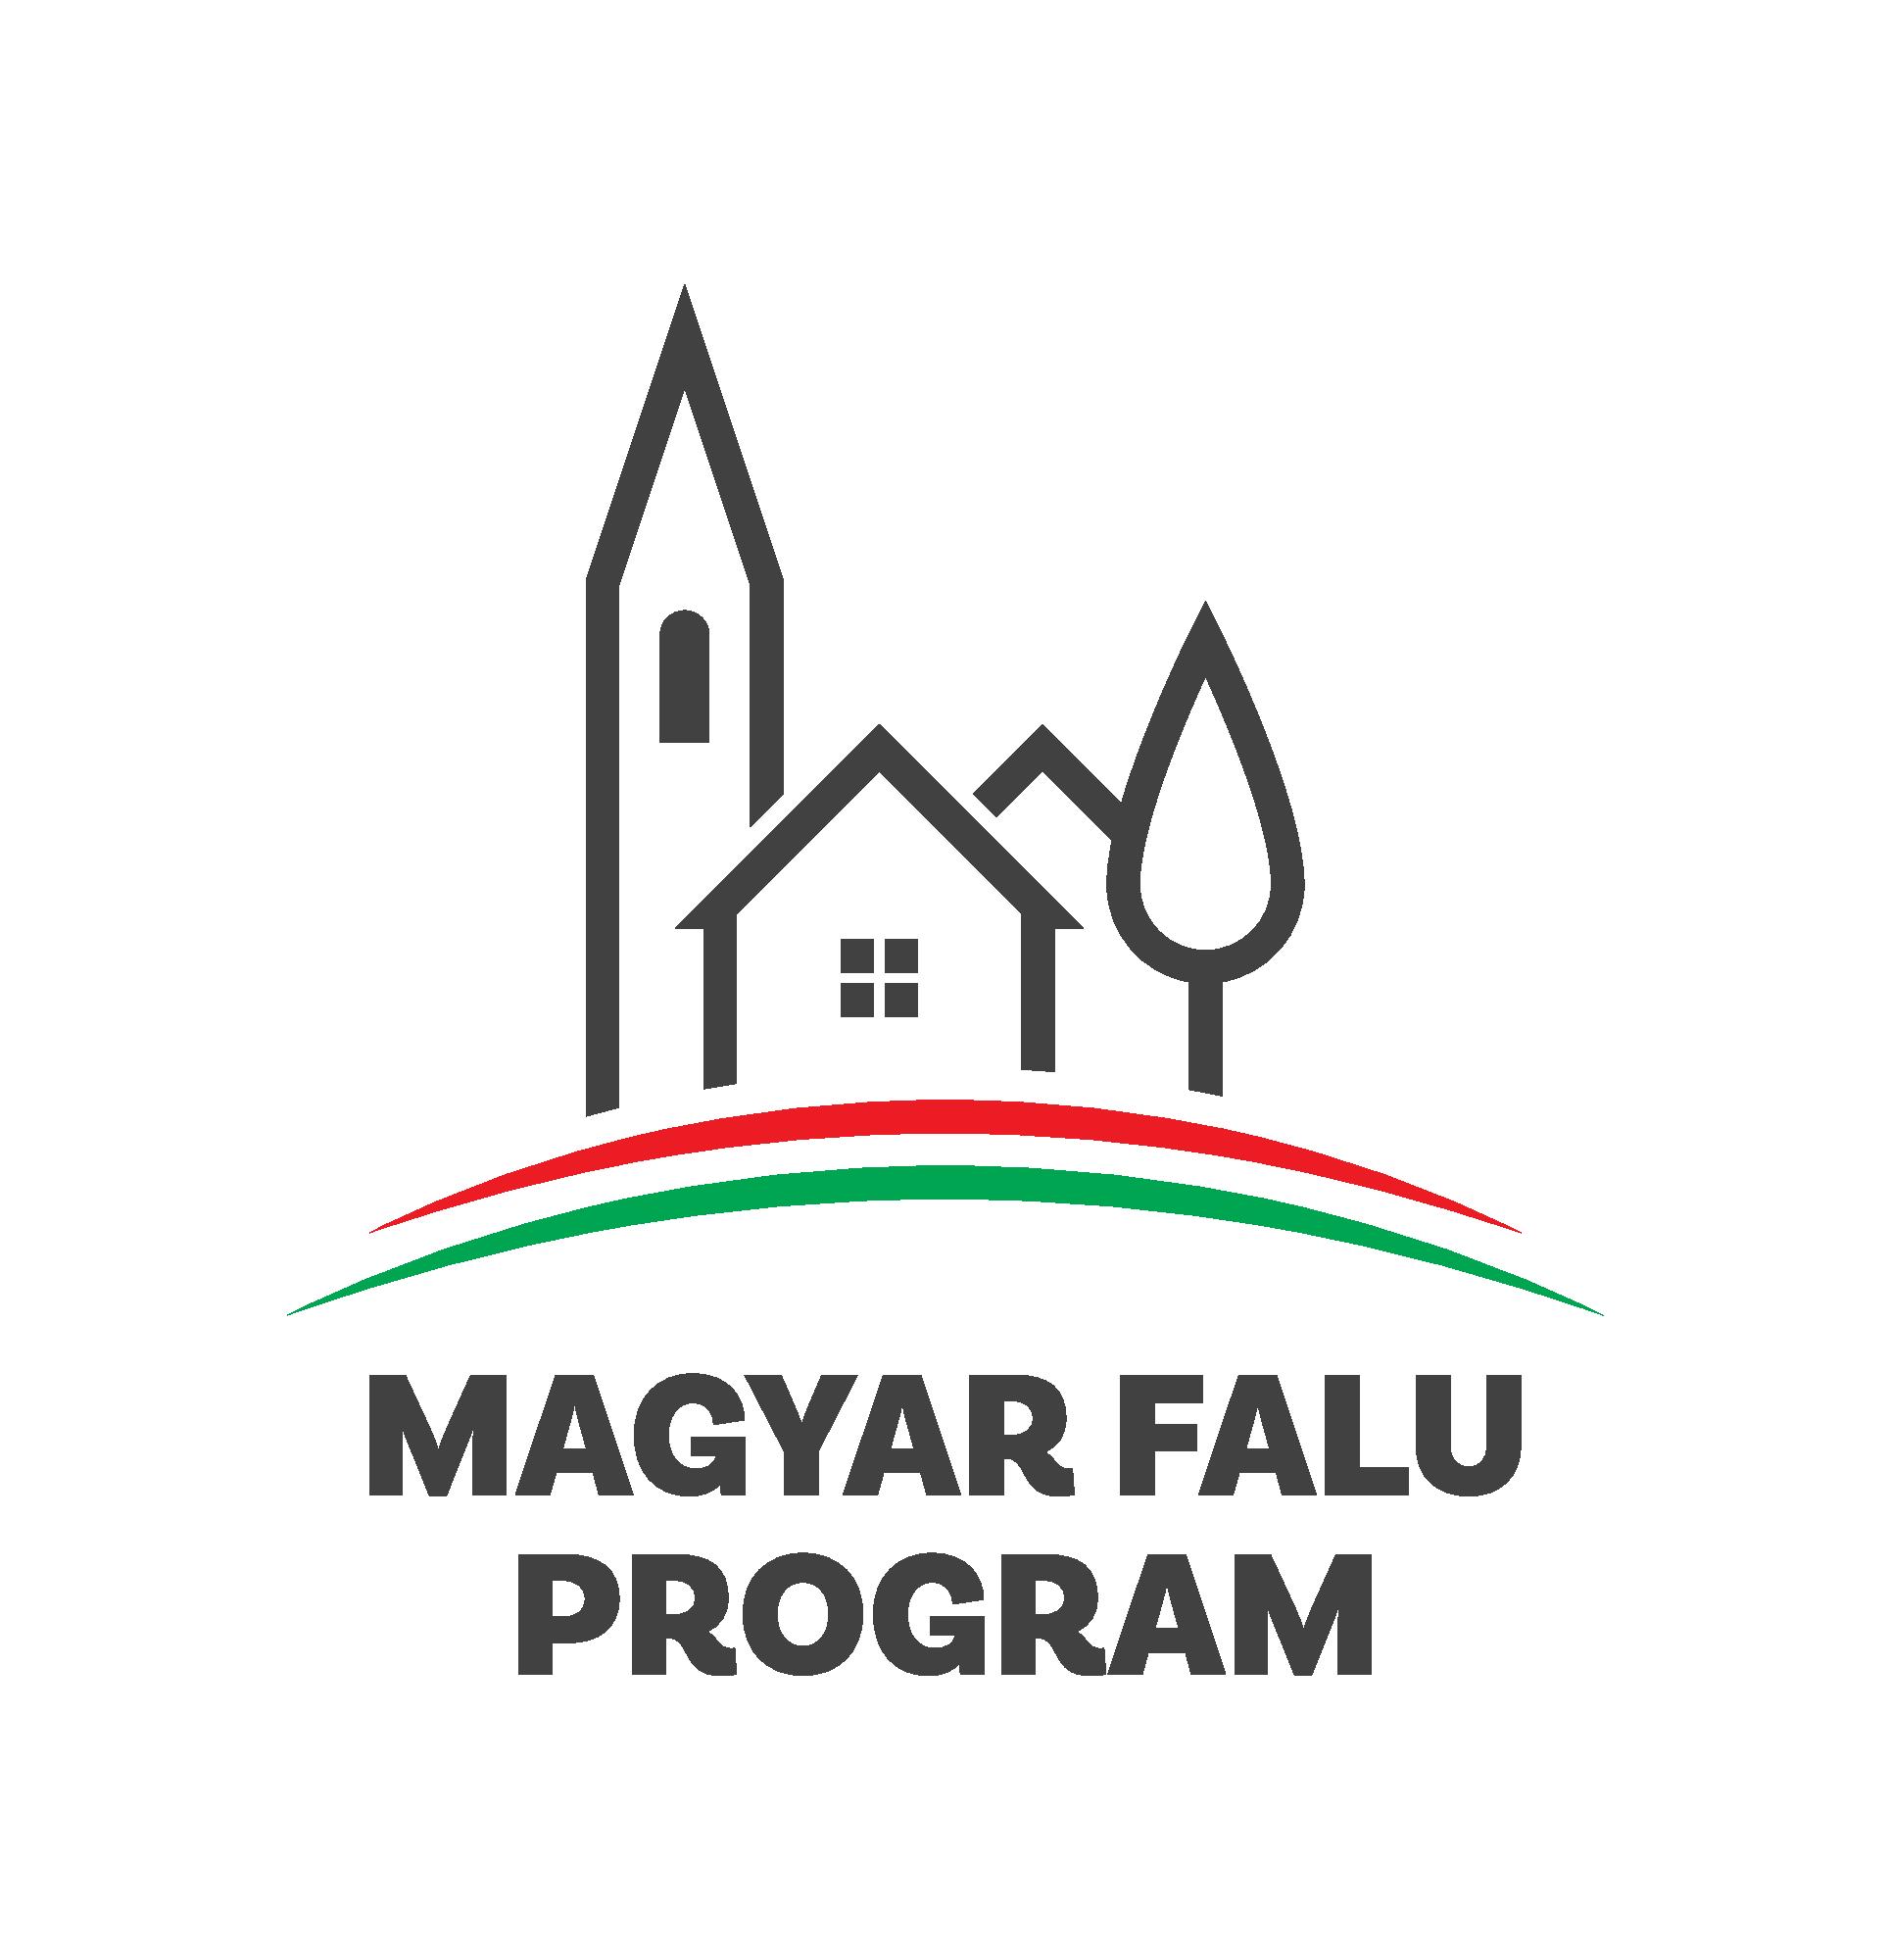 A Magyar Falu Program keretén belül meghirdetett „Falu- és tanyagondoki szolgálat támogatása” című és MFP-TFB/2019 kódszámú projekt megvalósítására Szécsényfelfalu Község Önkormányzata 14.890.000 forint vissza nem térítendő támogatásban részesült.  